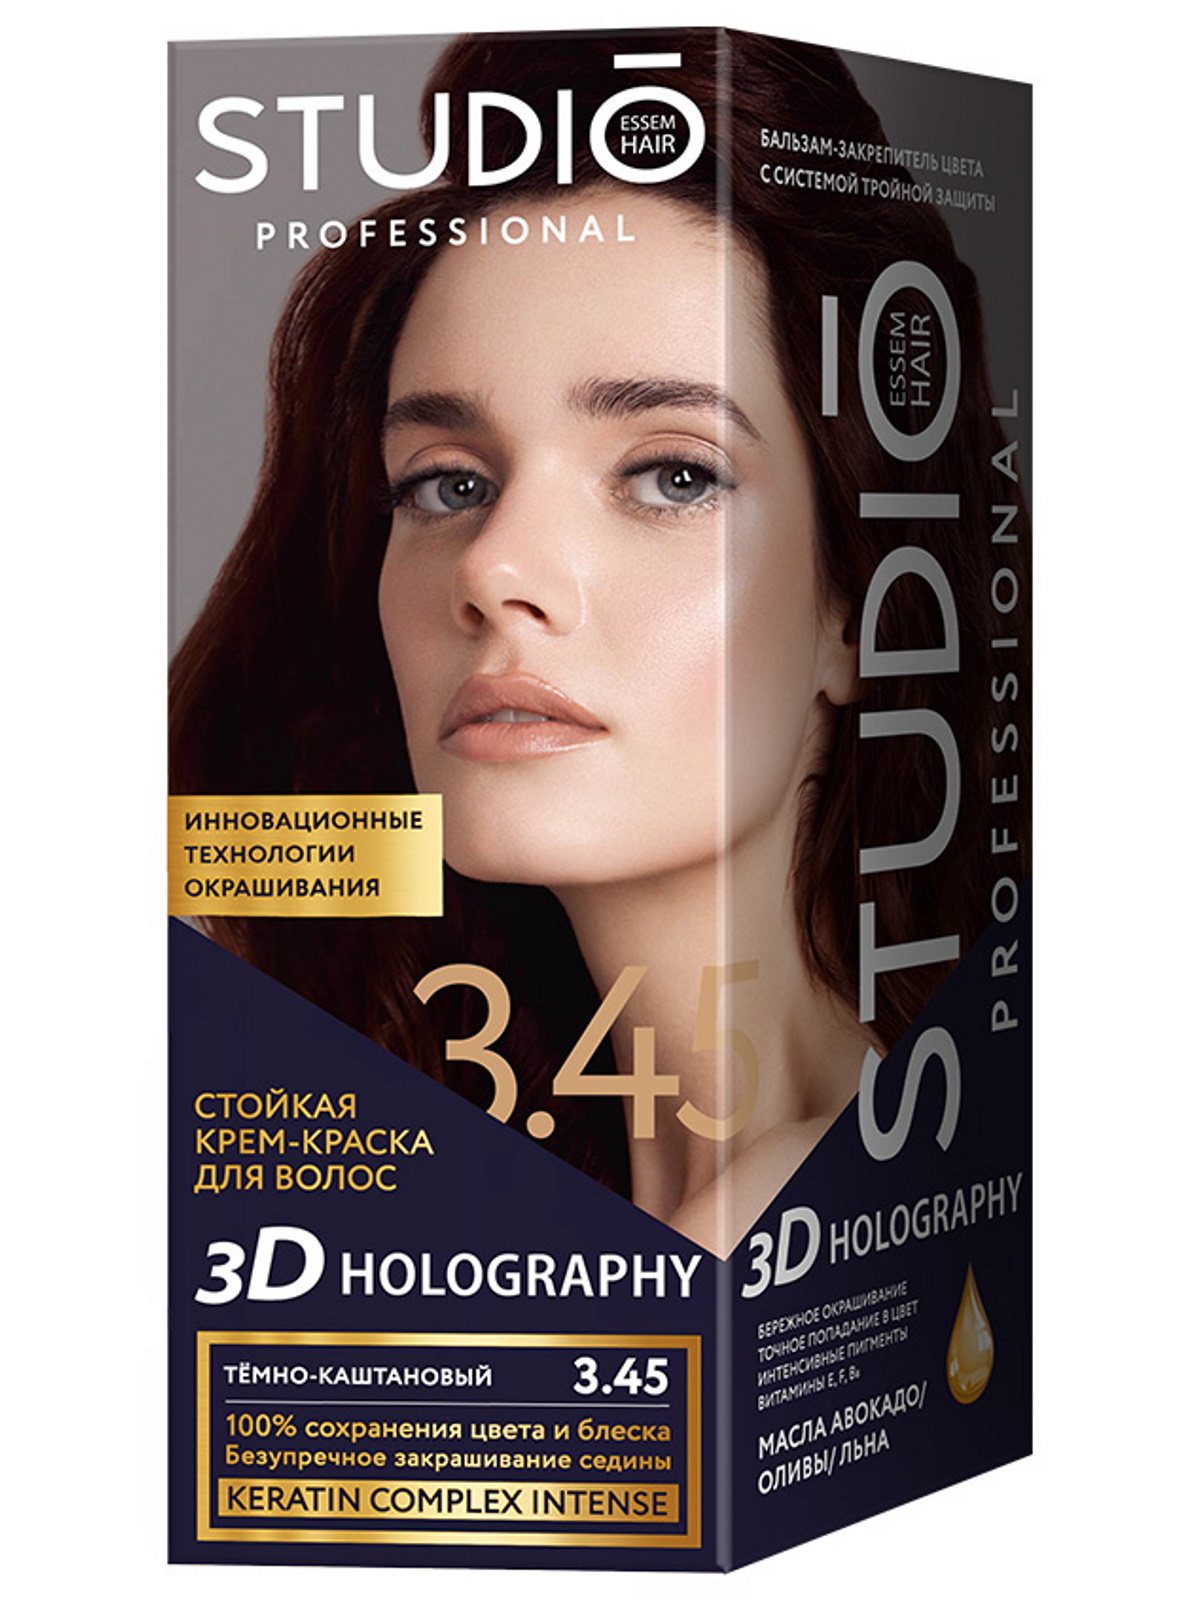 Комплект 3D HOLOGRAPHY STUDIO PROFESSIONAL 3.45 темно-каштановый 2*50+15 мл - купить в Магнит Косметик - СберМаркет, цена на Мегамаркет